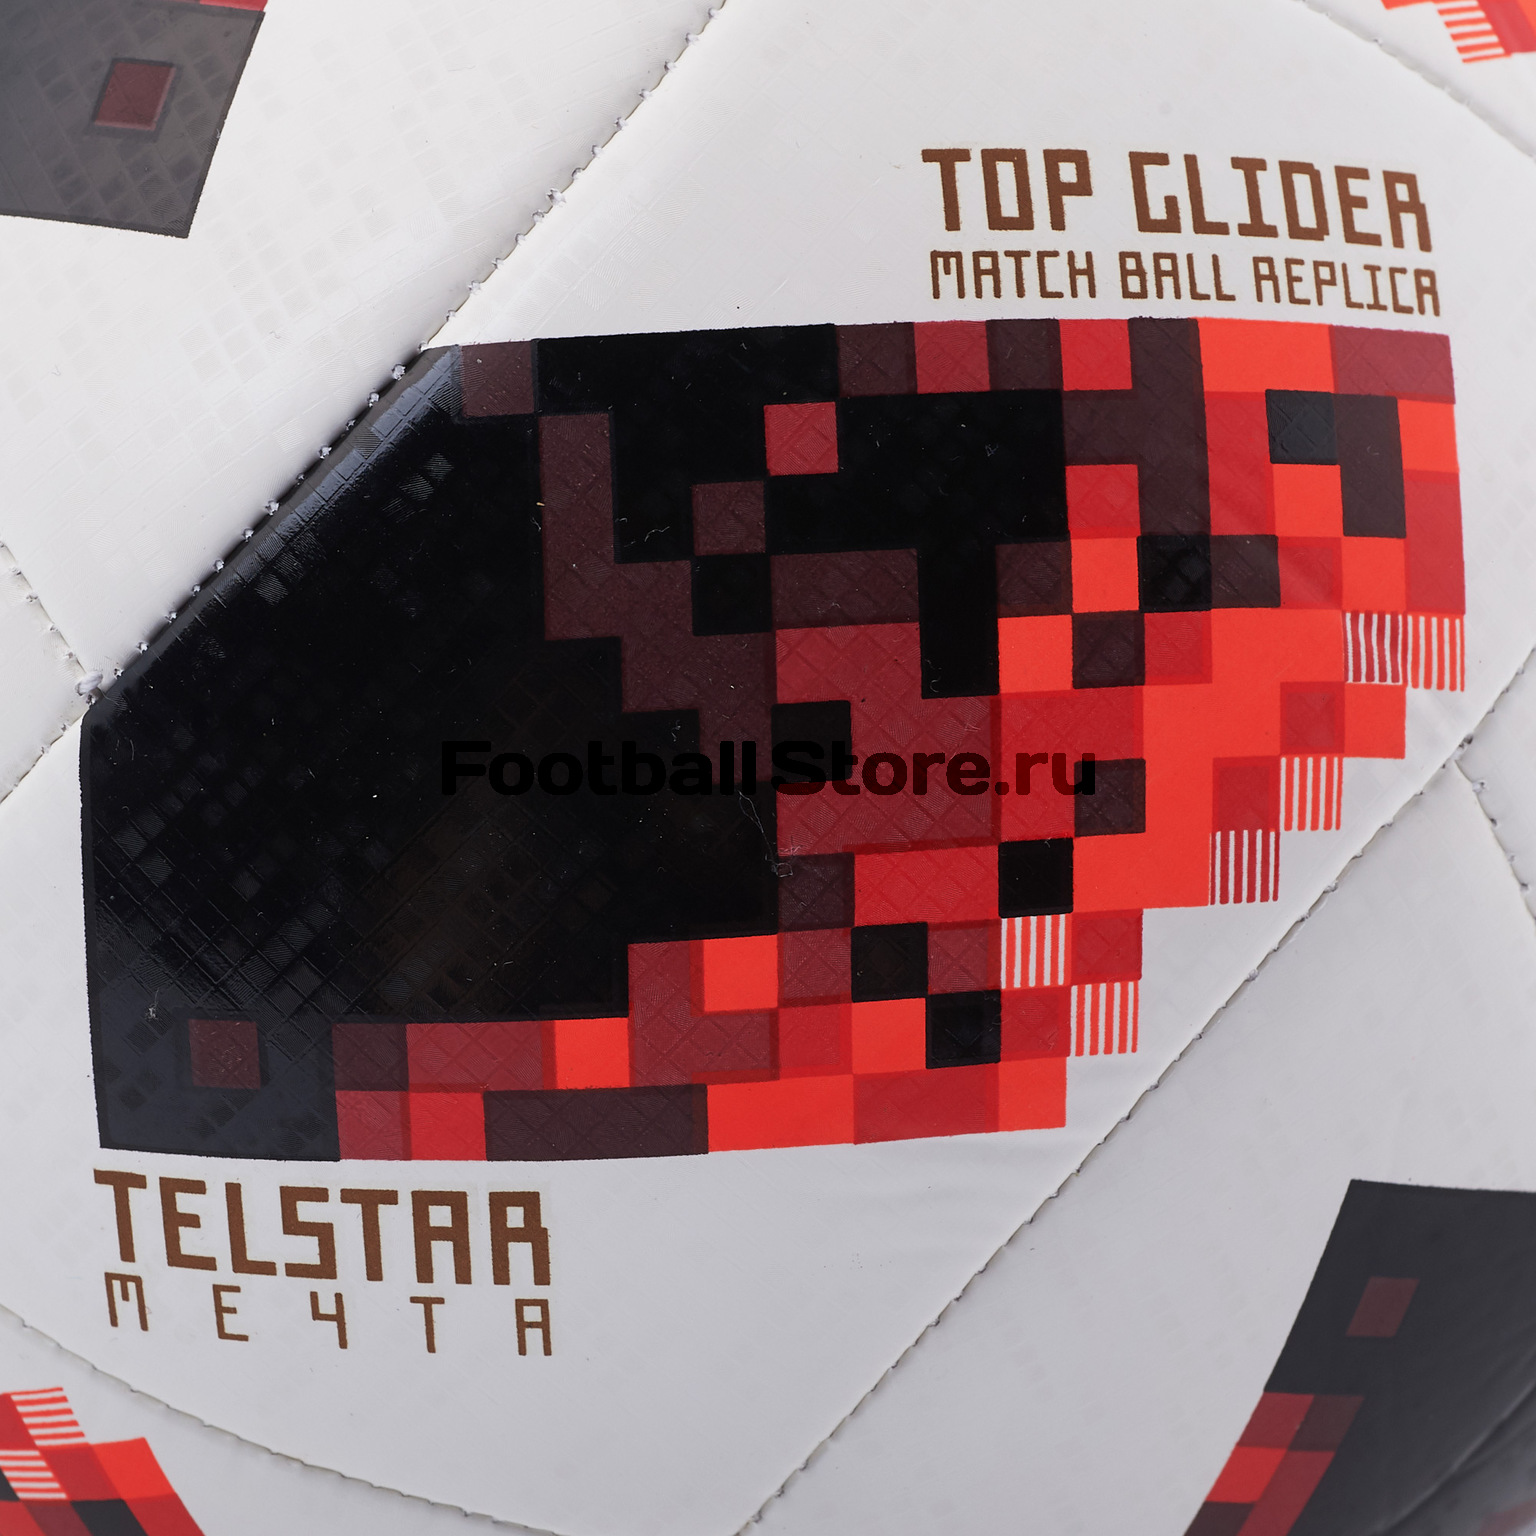 Футбольный мяч Adidas Telstar Мечта Top Glider ЧМ-2018 CW4684